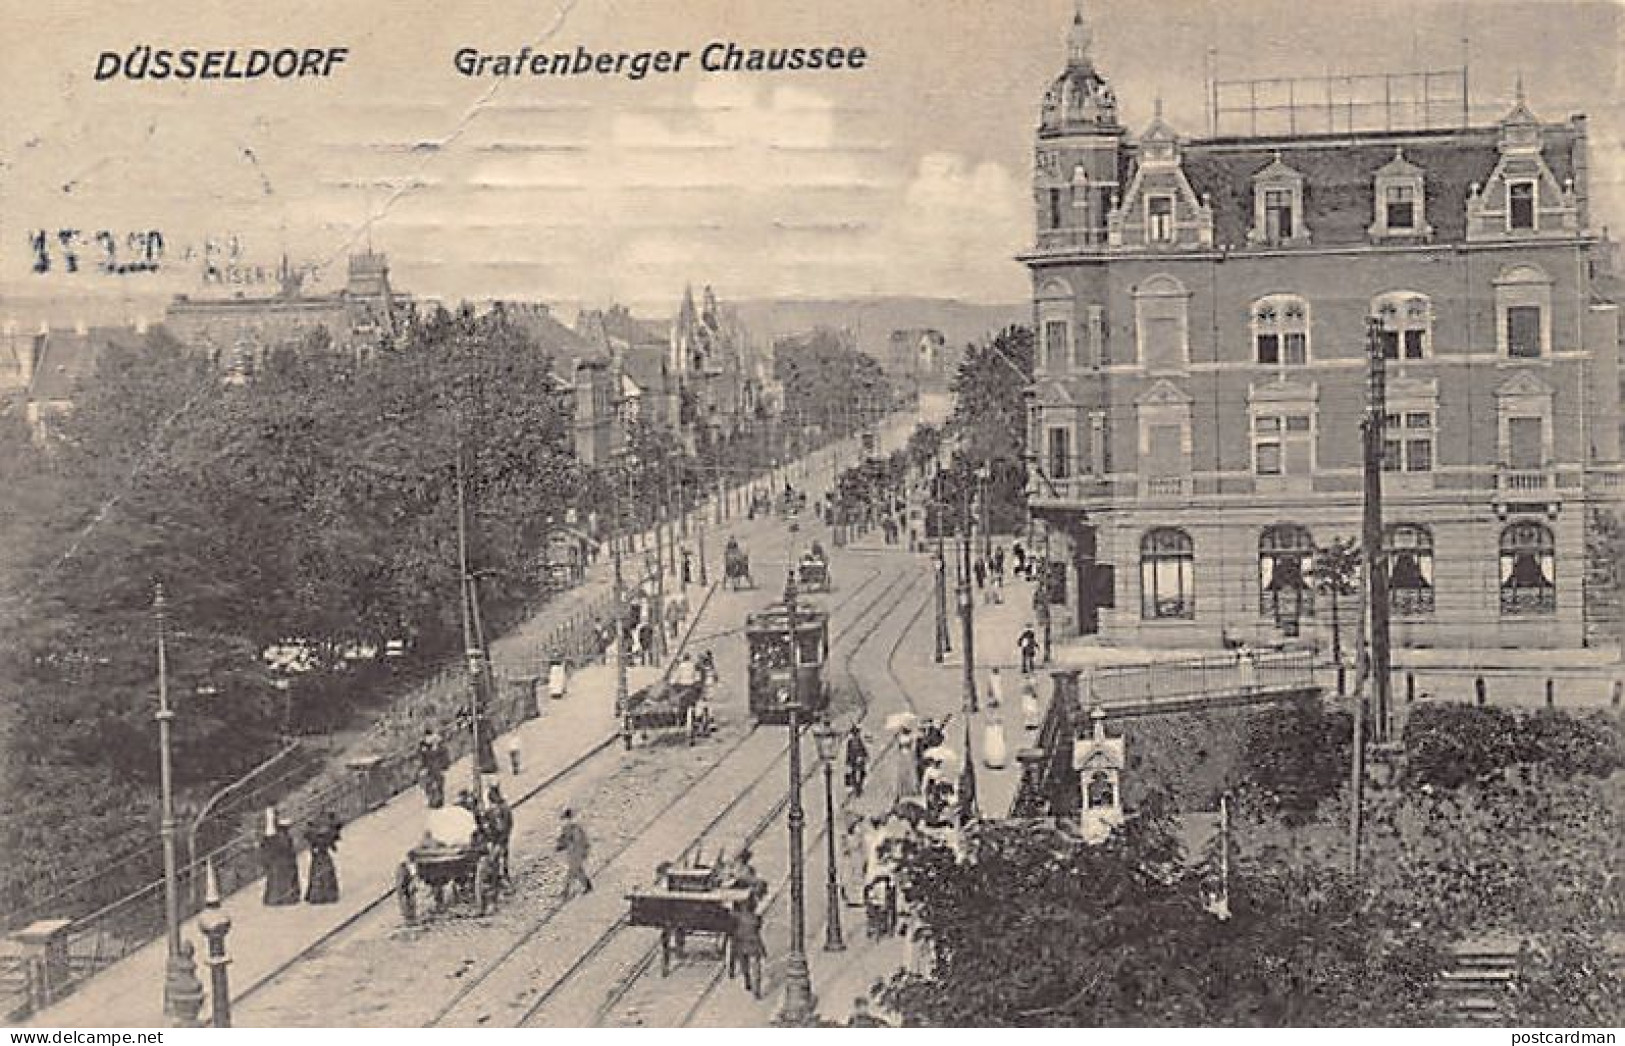 Düsseldorf (NW) Grafenberger Chaussee Straßenbahn Kutsche - Duesseldorf